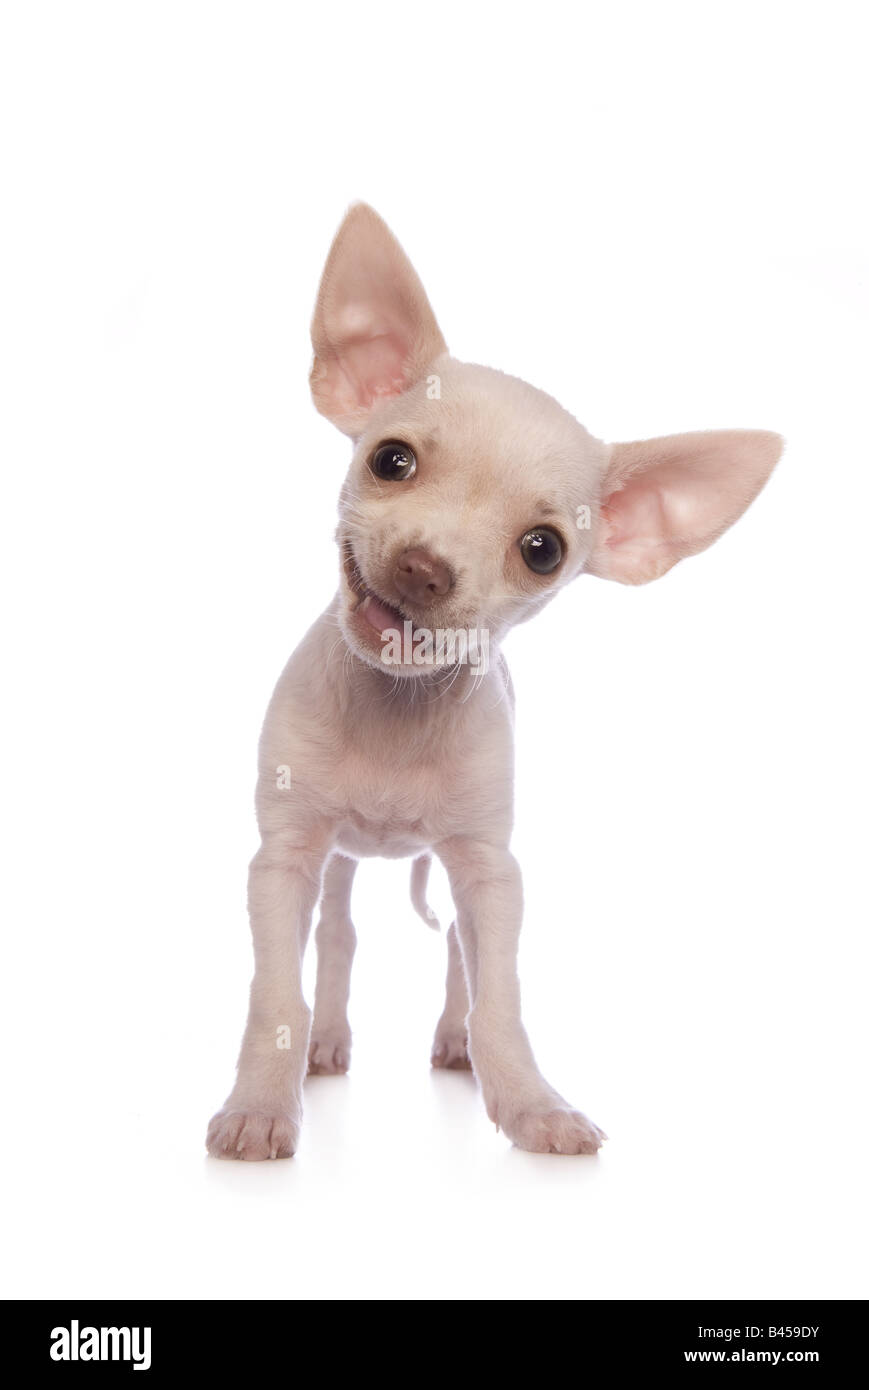 Carino color crema shorthaired Chihuahua cucciolo sorridente isolati su sfondo bianco Foto Stock